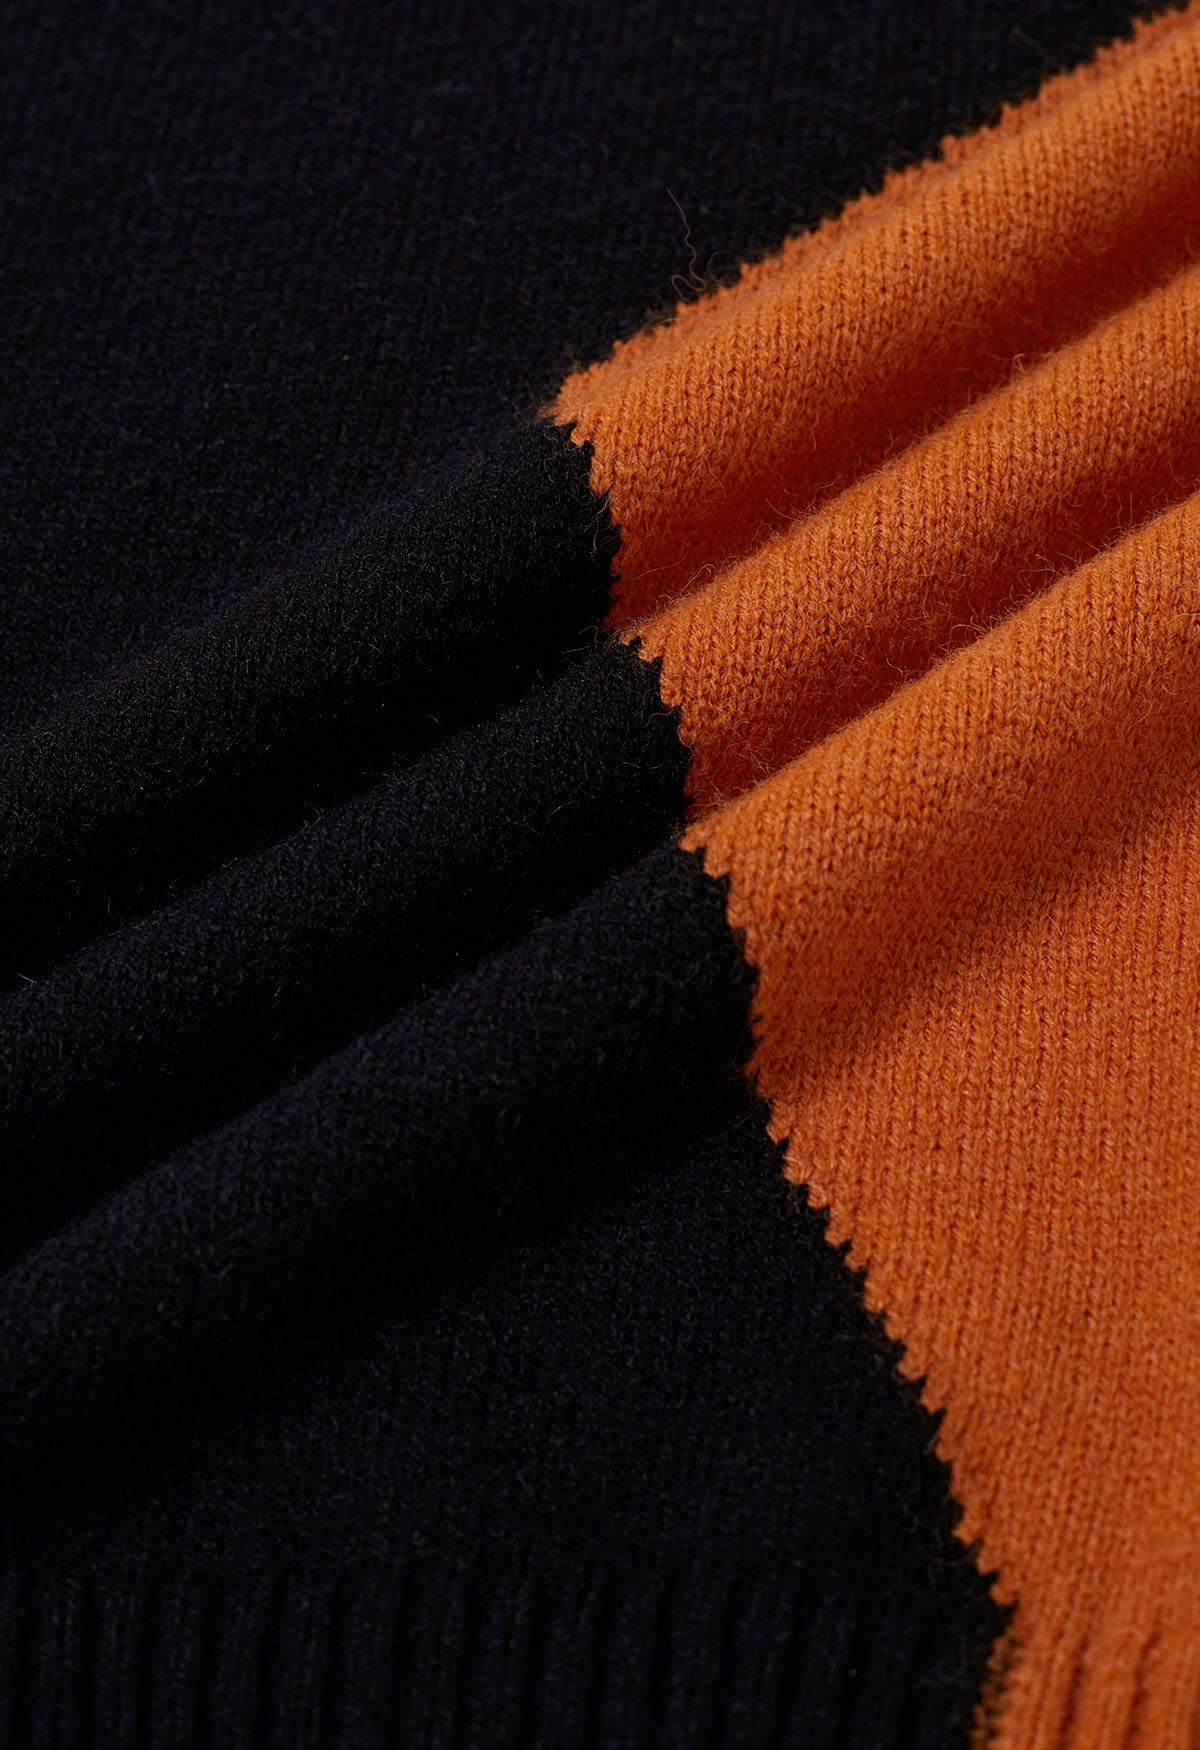 Pull en tricot à blocs de couleurs fantaisistes